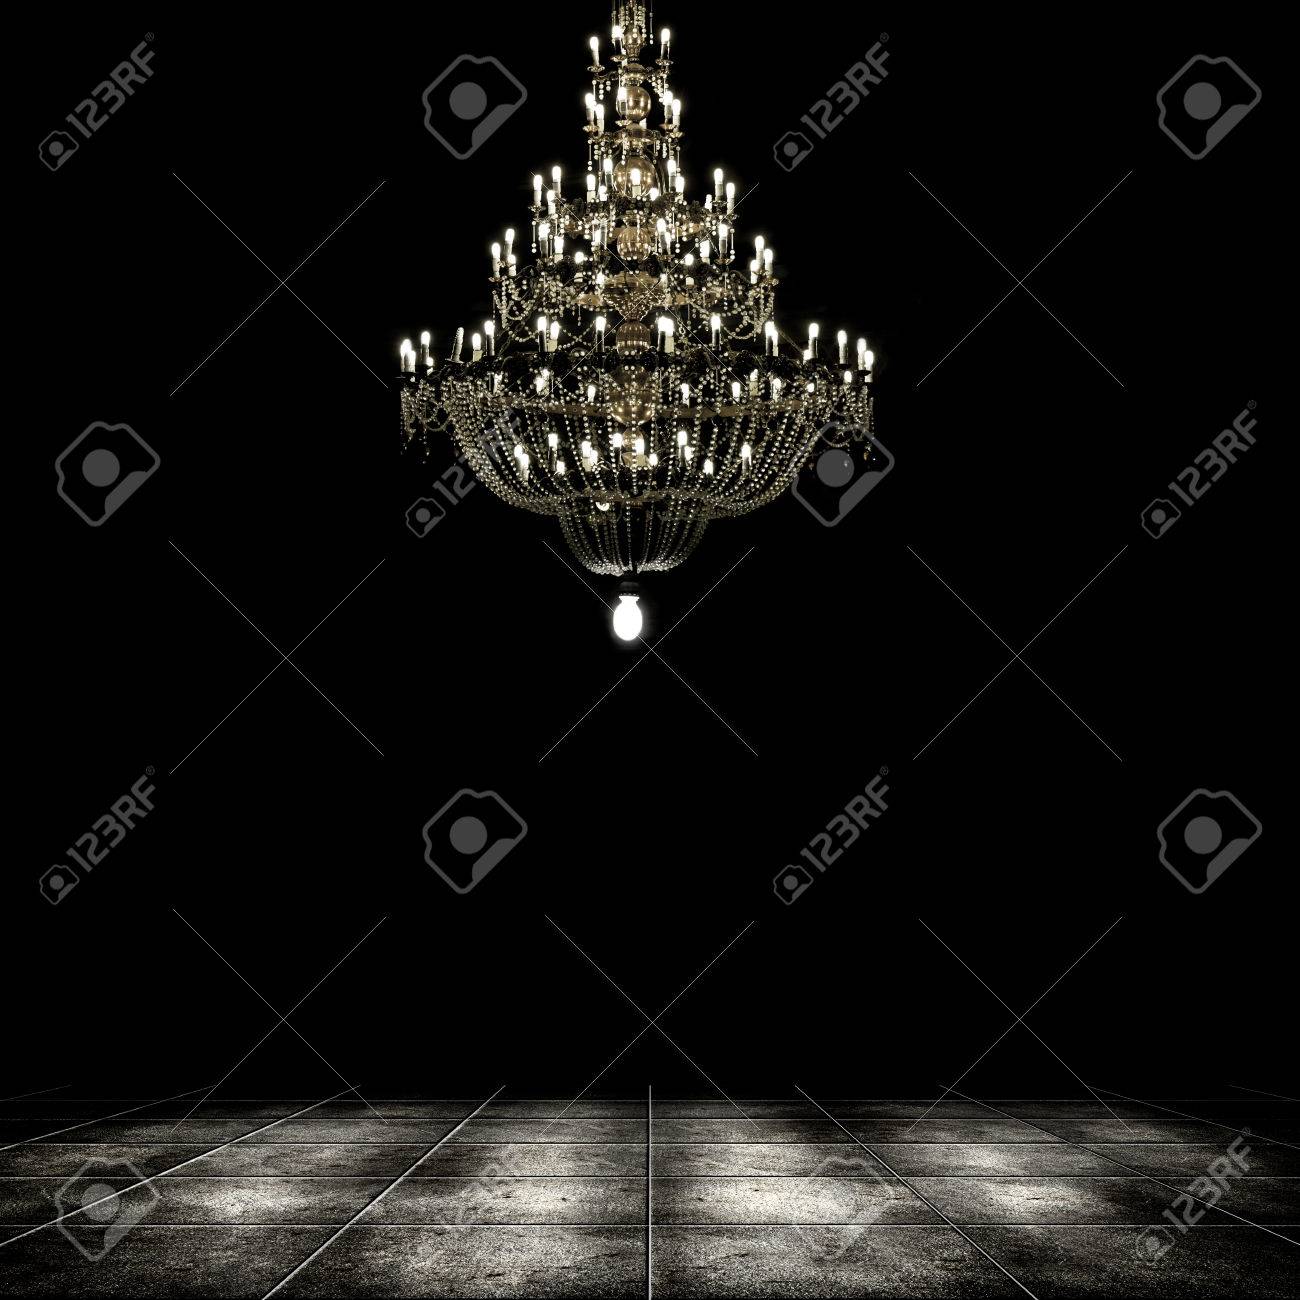 Image Of Grunge Dark Room Interior With Chandelier Background